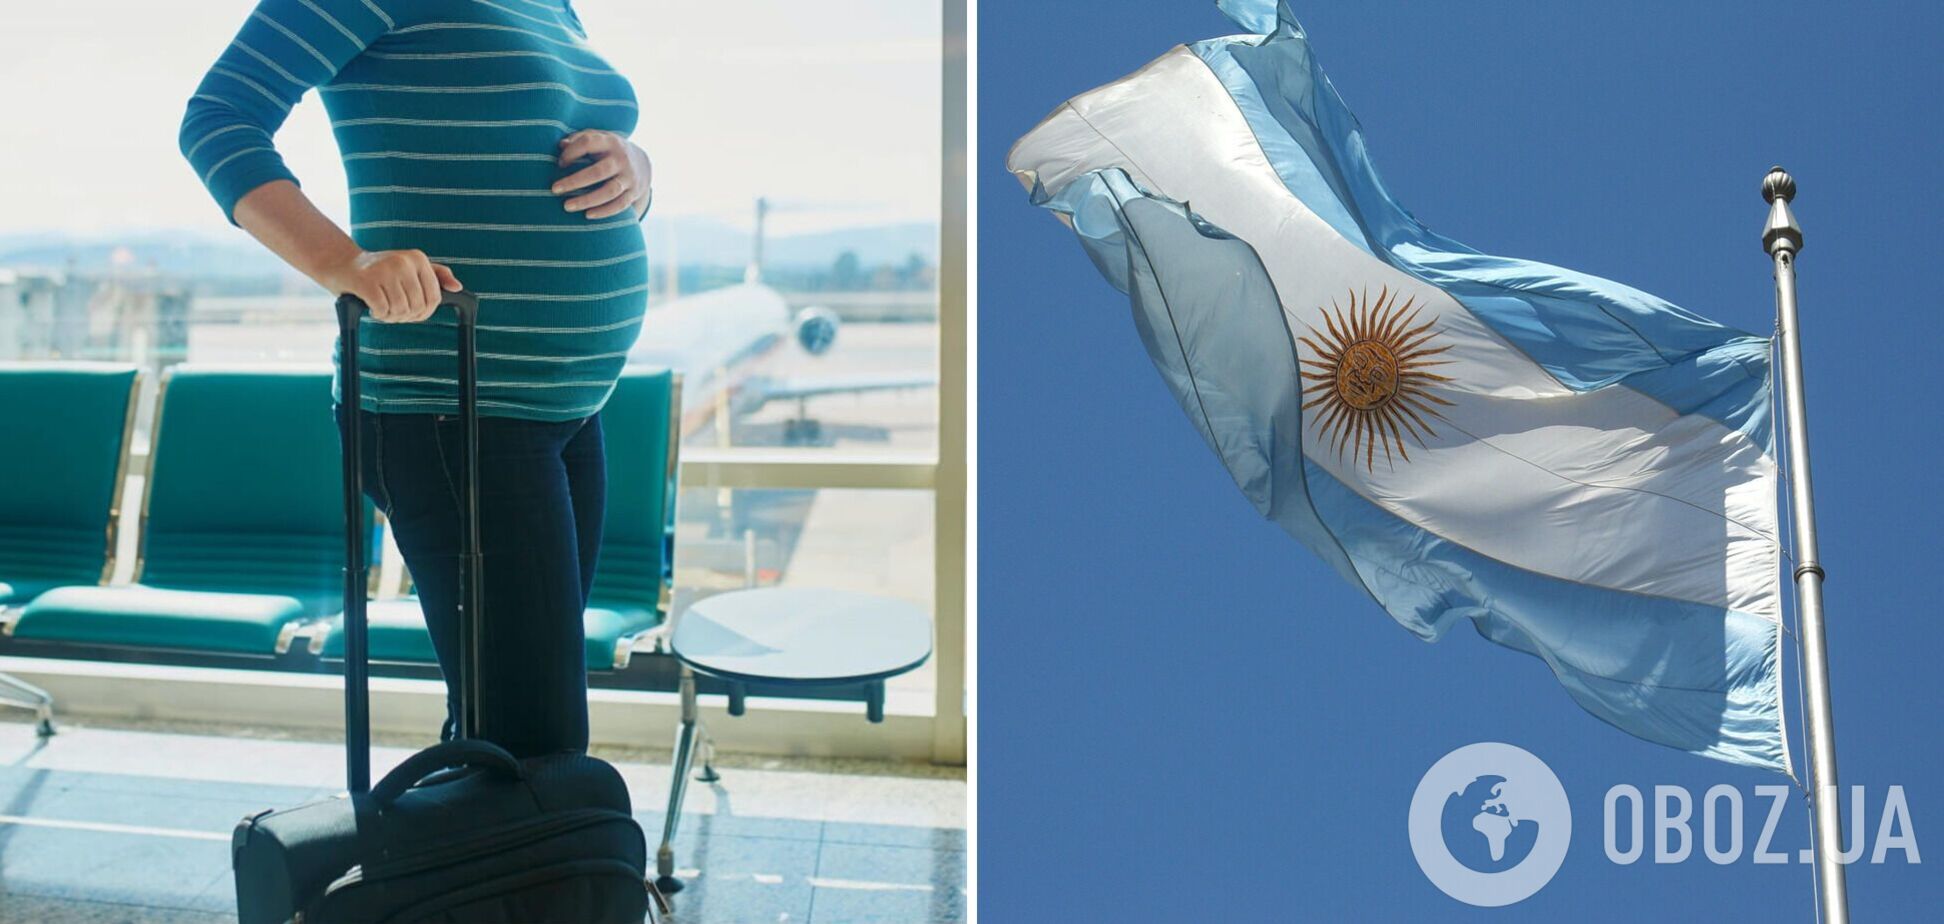 Беременные россиянки массово летят в Аргентину ради гражданства для детей: СМИ рассказали об ажиотаже